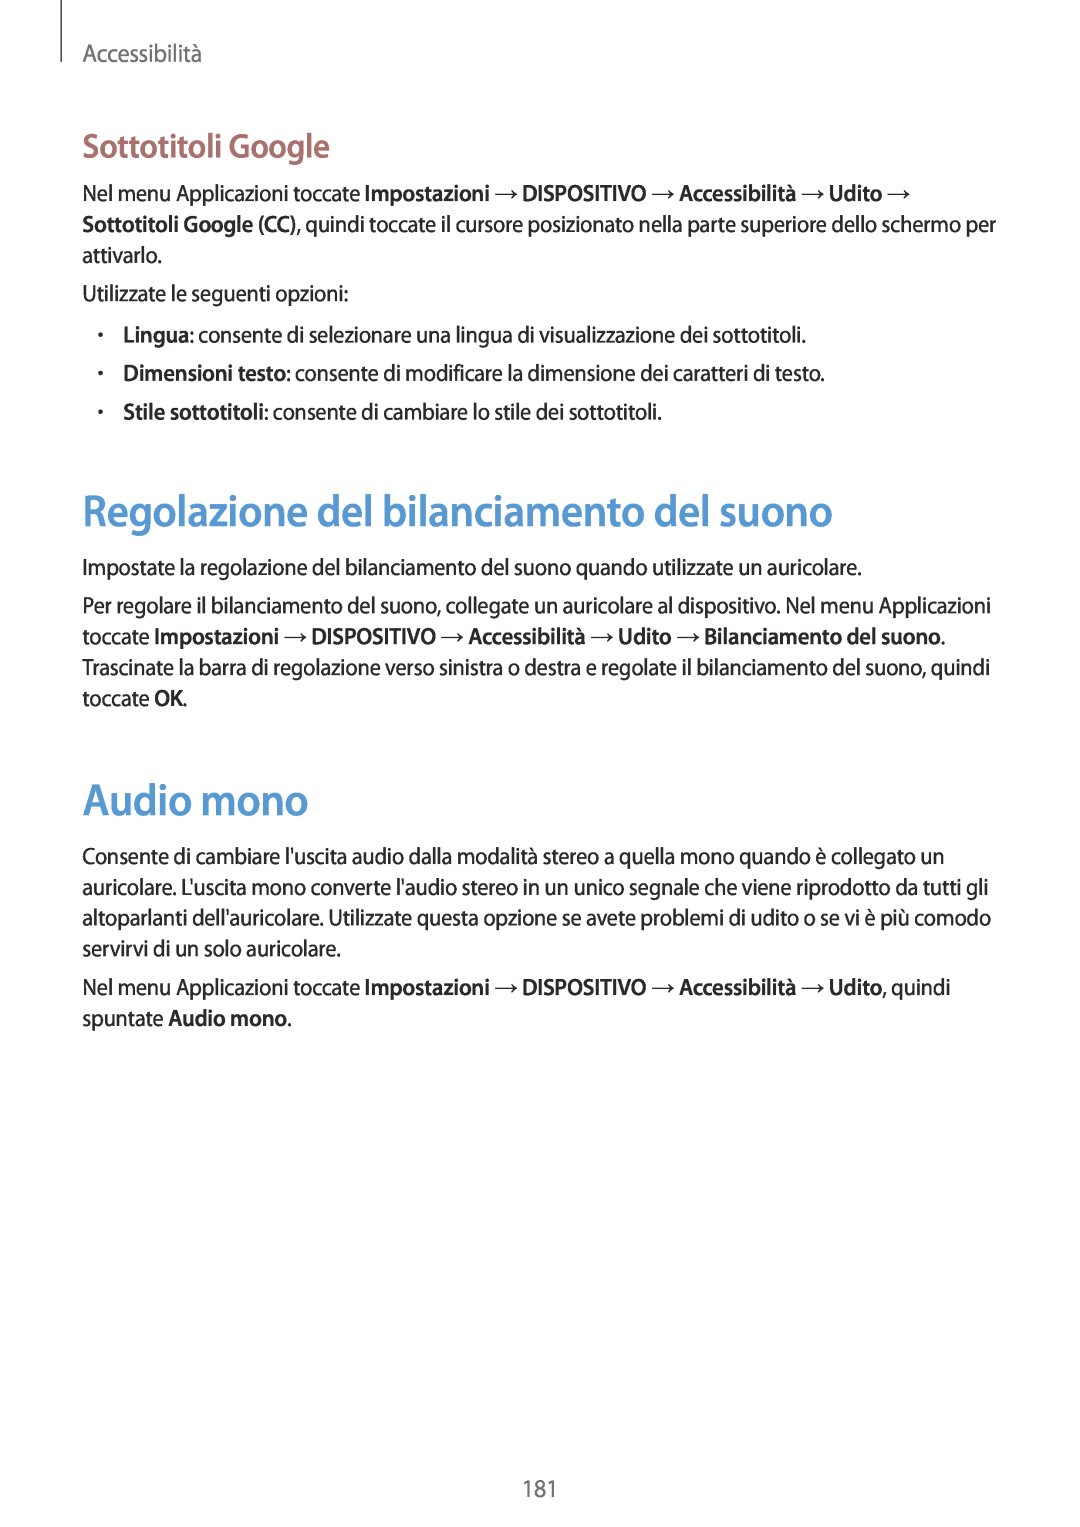 Samsung SM-T700NTSATUR manual Regolazione del bilanciamento del suono, Audio mono, Sottotitoli Google, Accessibilità 